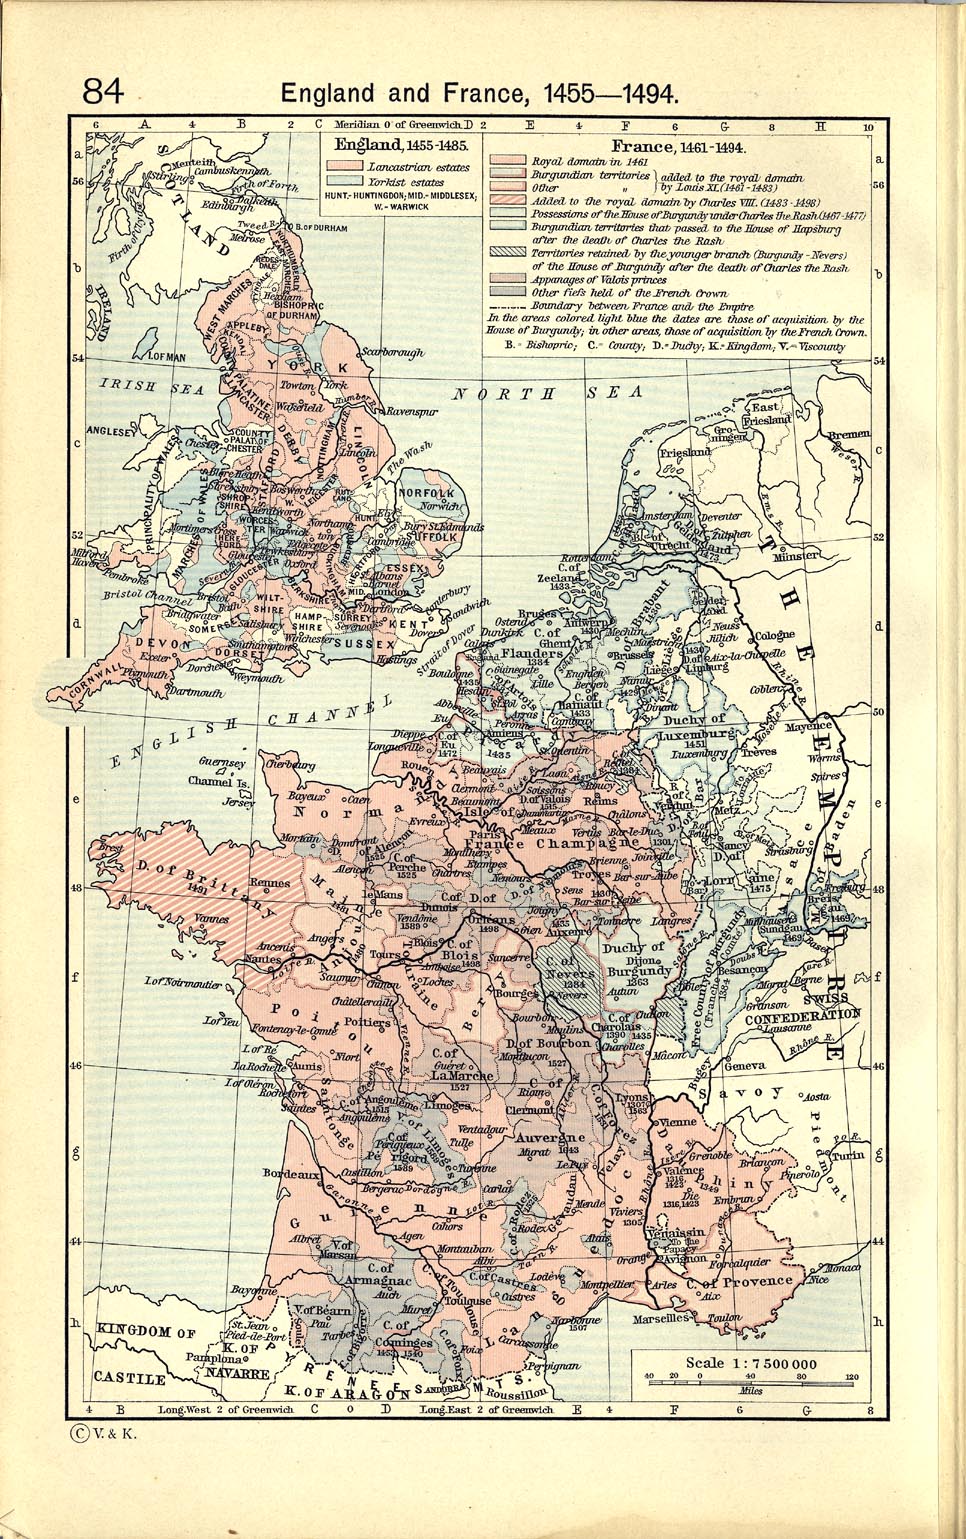 1921 Blois France Antique Map